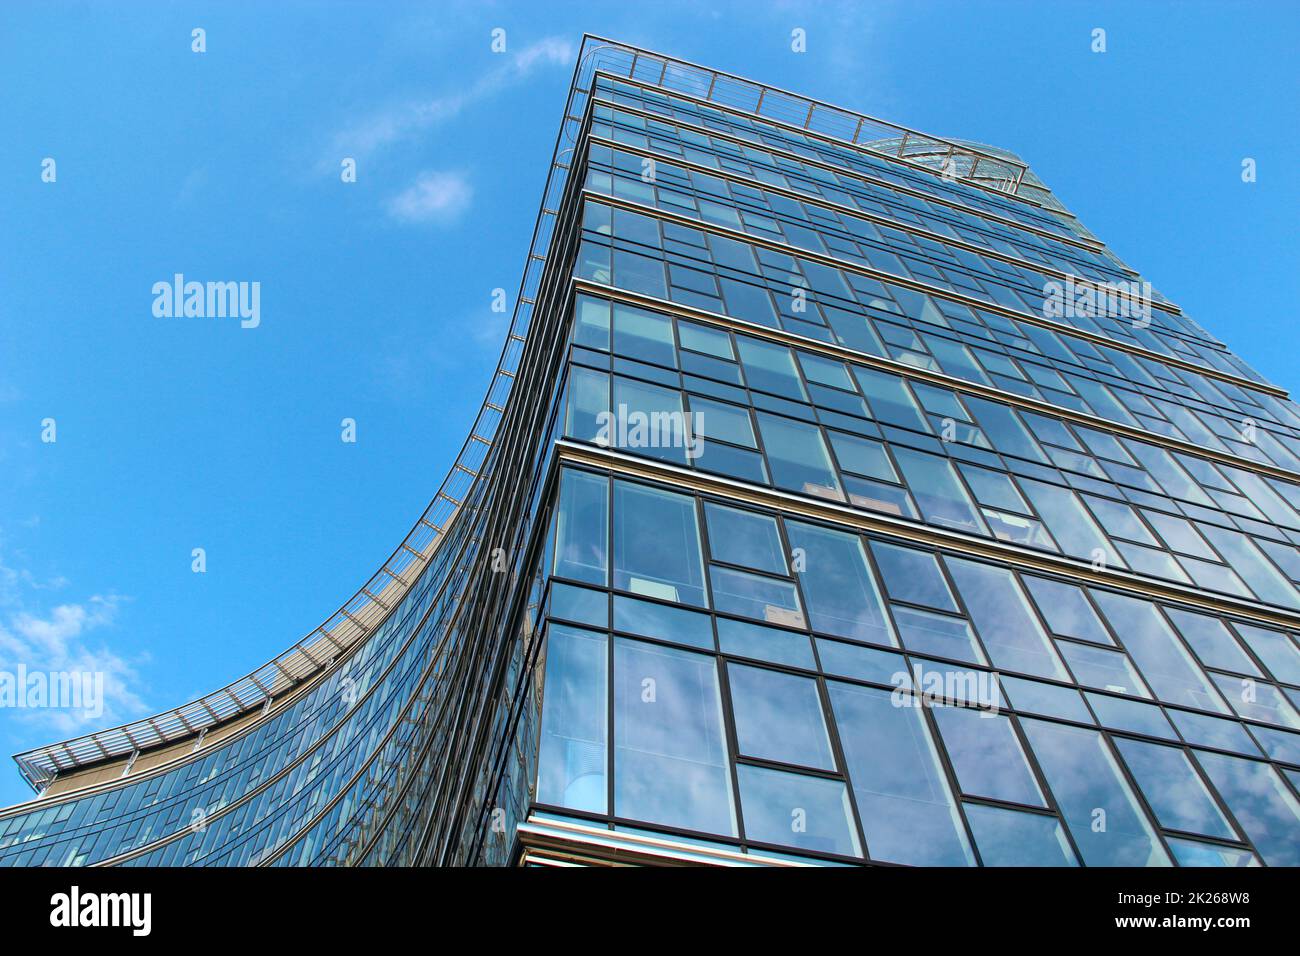 Alto grattacielo di vetro a Varsavia. Architettura moderna di edifici cittadini Foto Stock